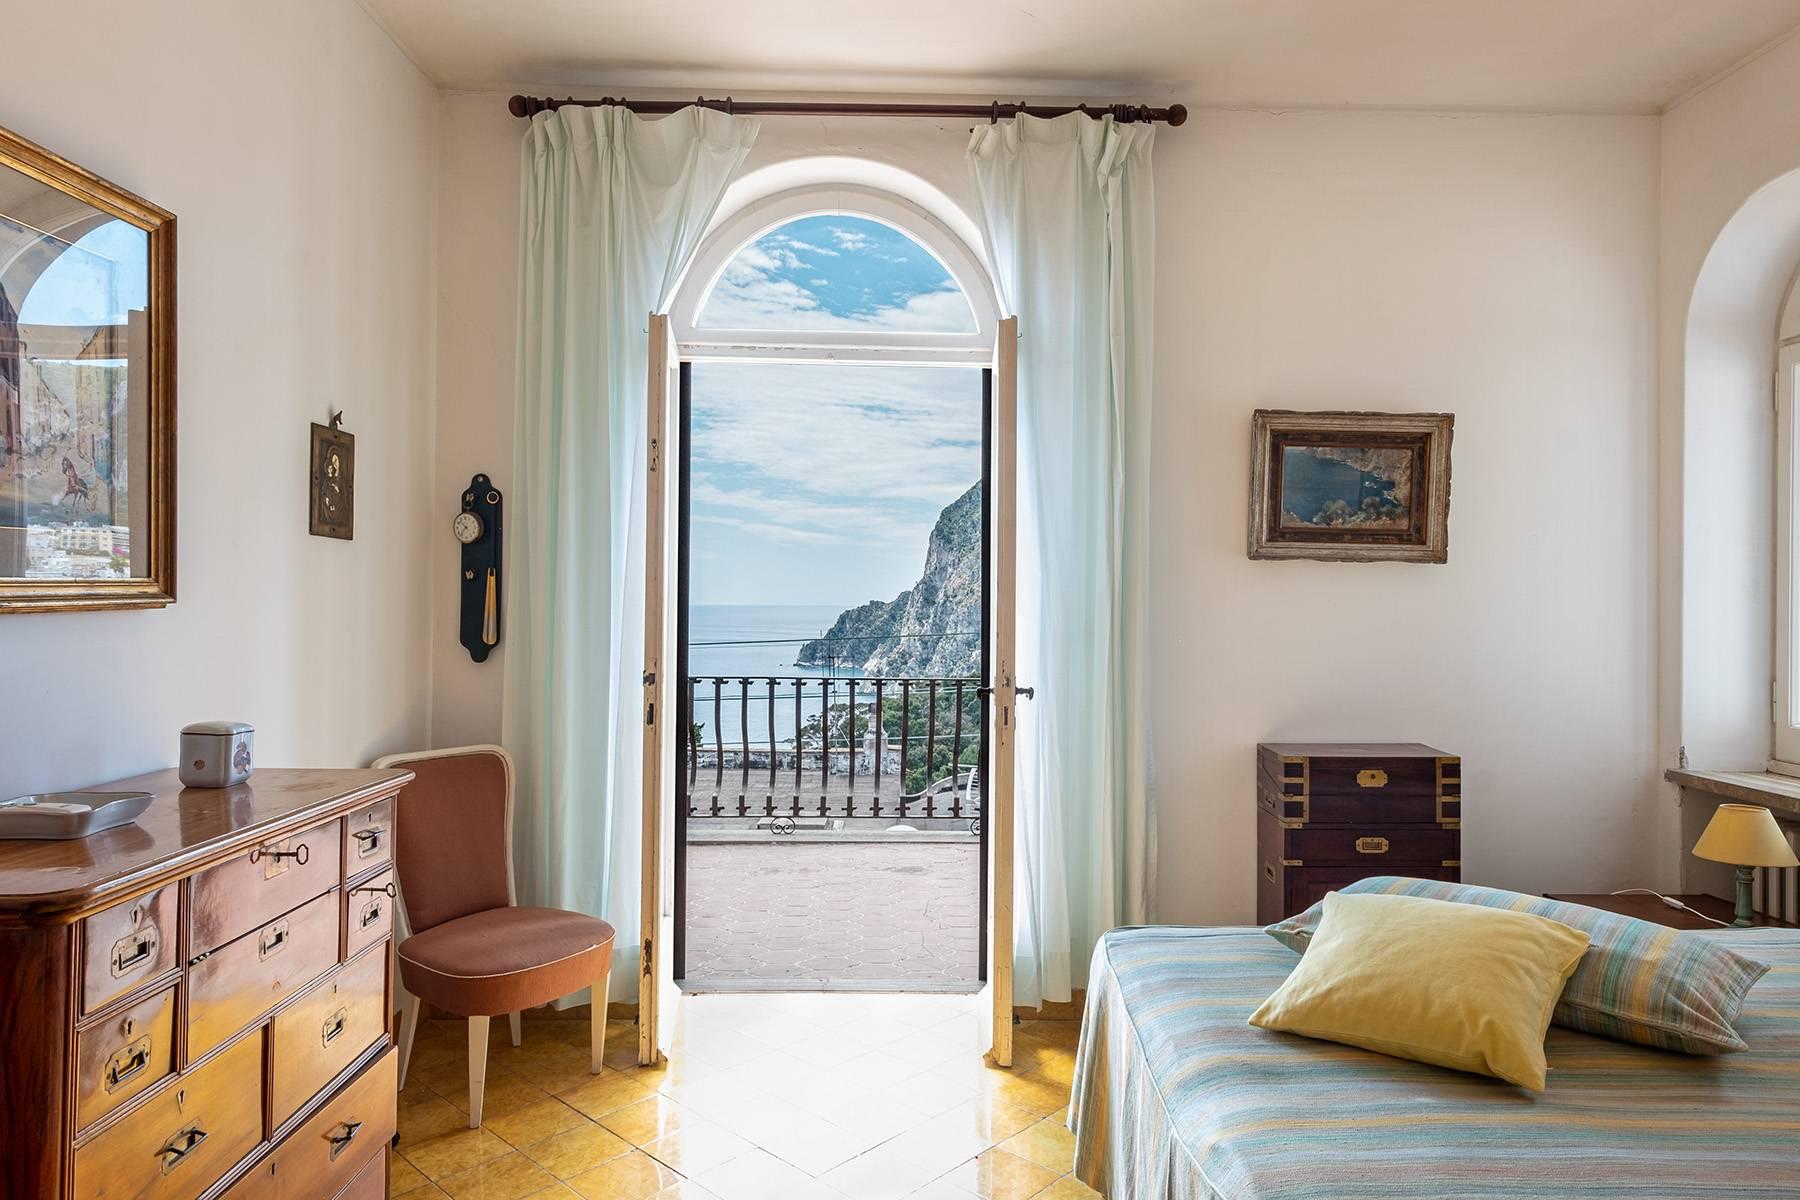 Magnificent villa in the center of Capri overlooking the sea - 15